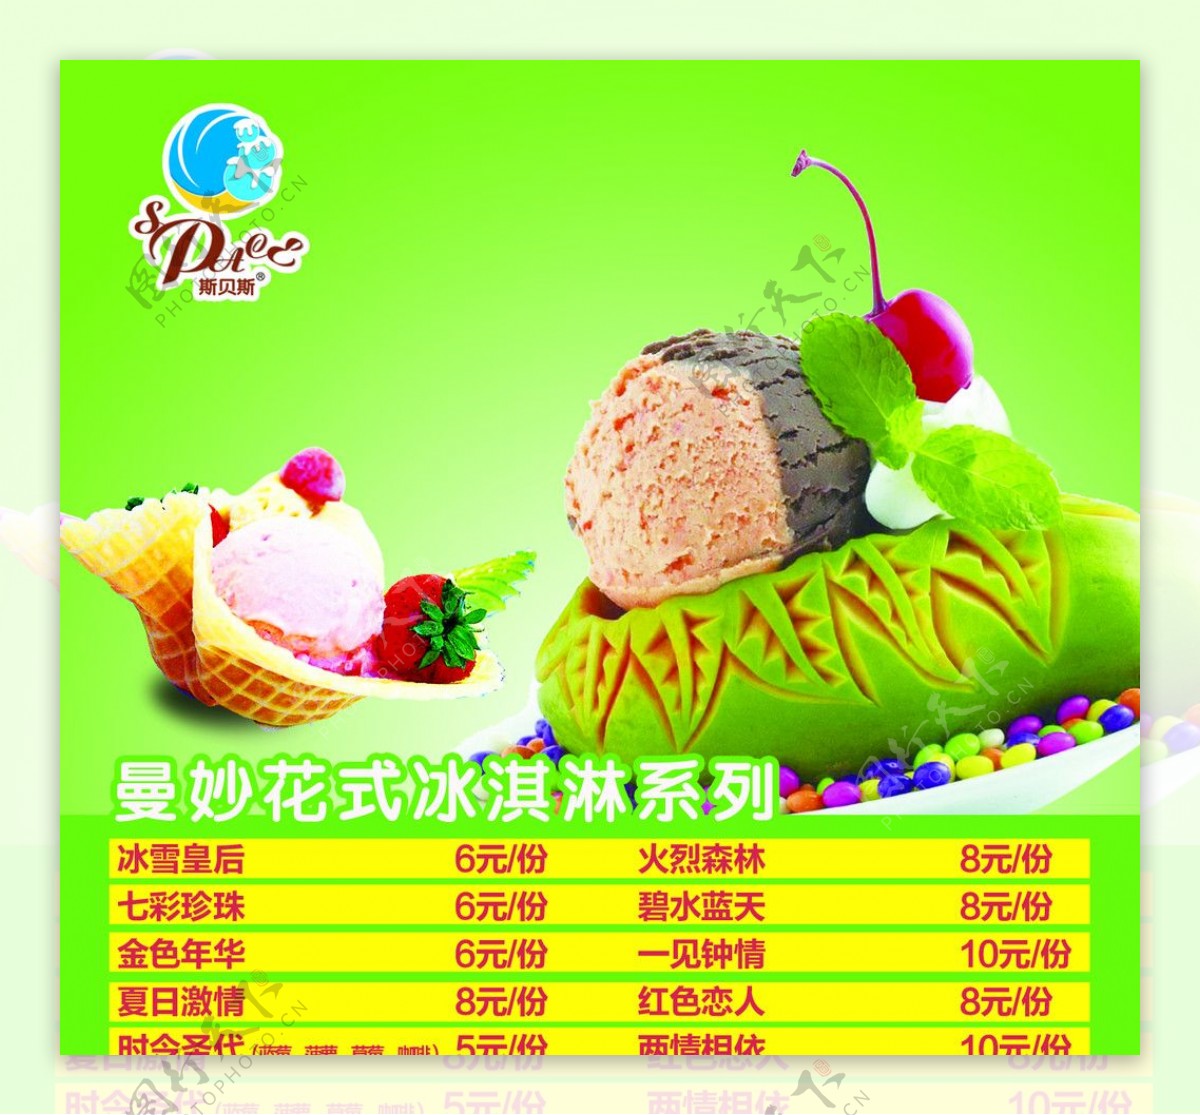 曼妙花式冰淇淋系列图片